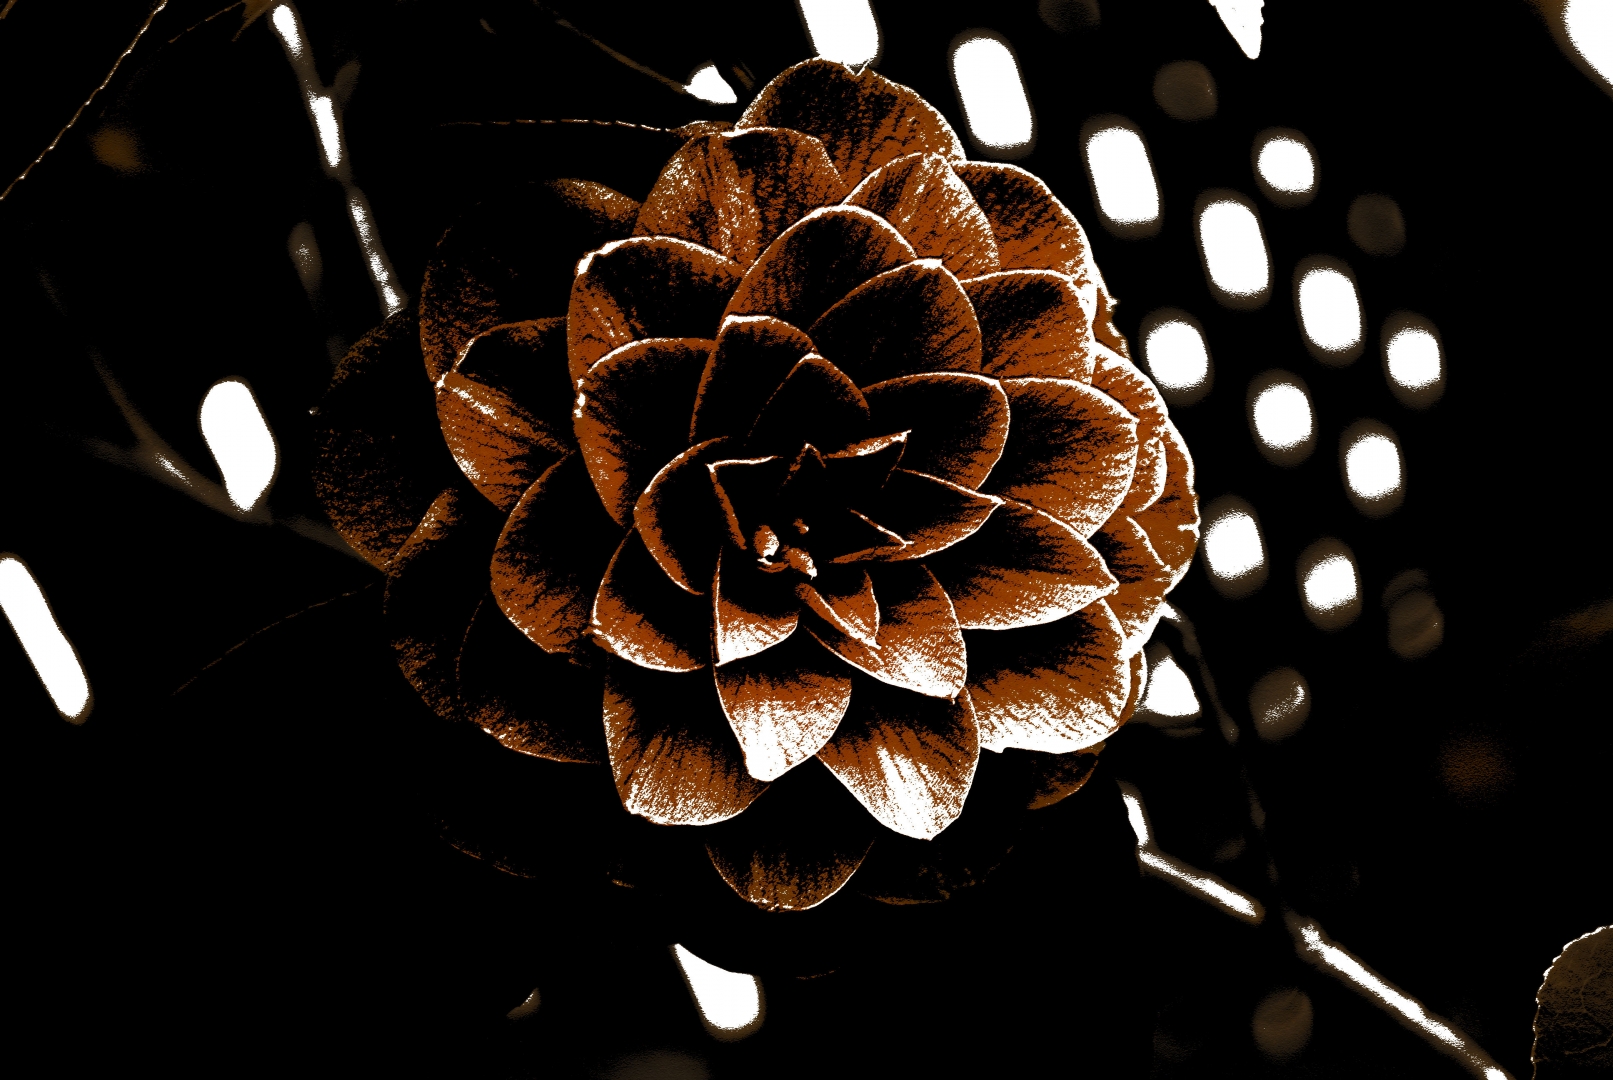 Sepia flower